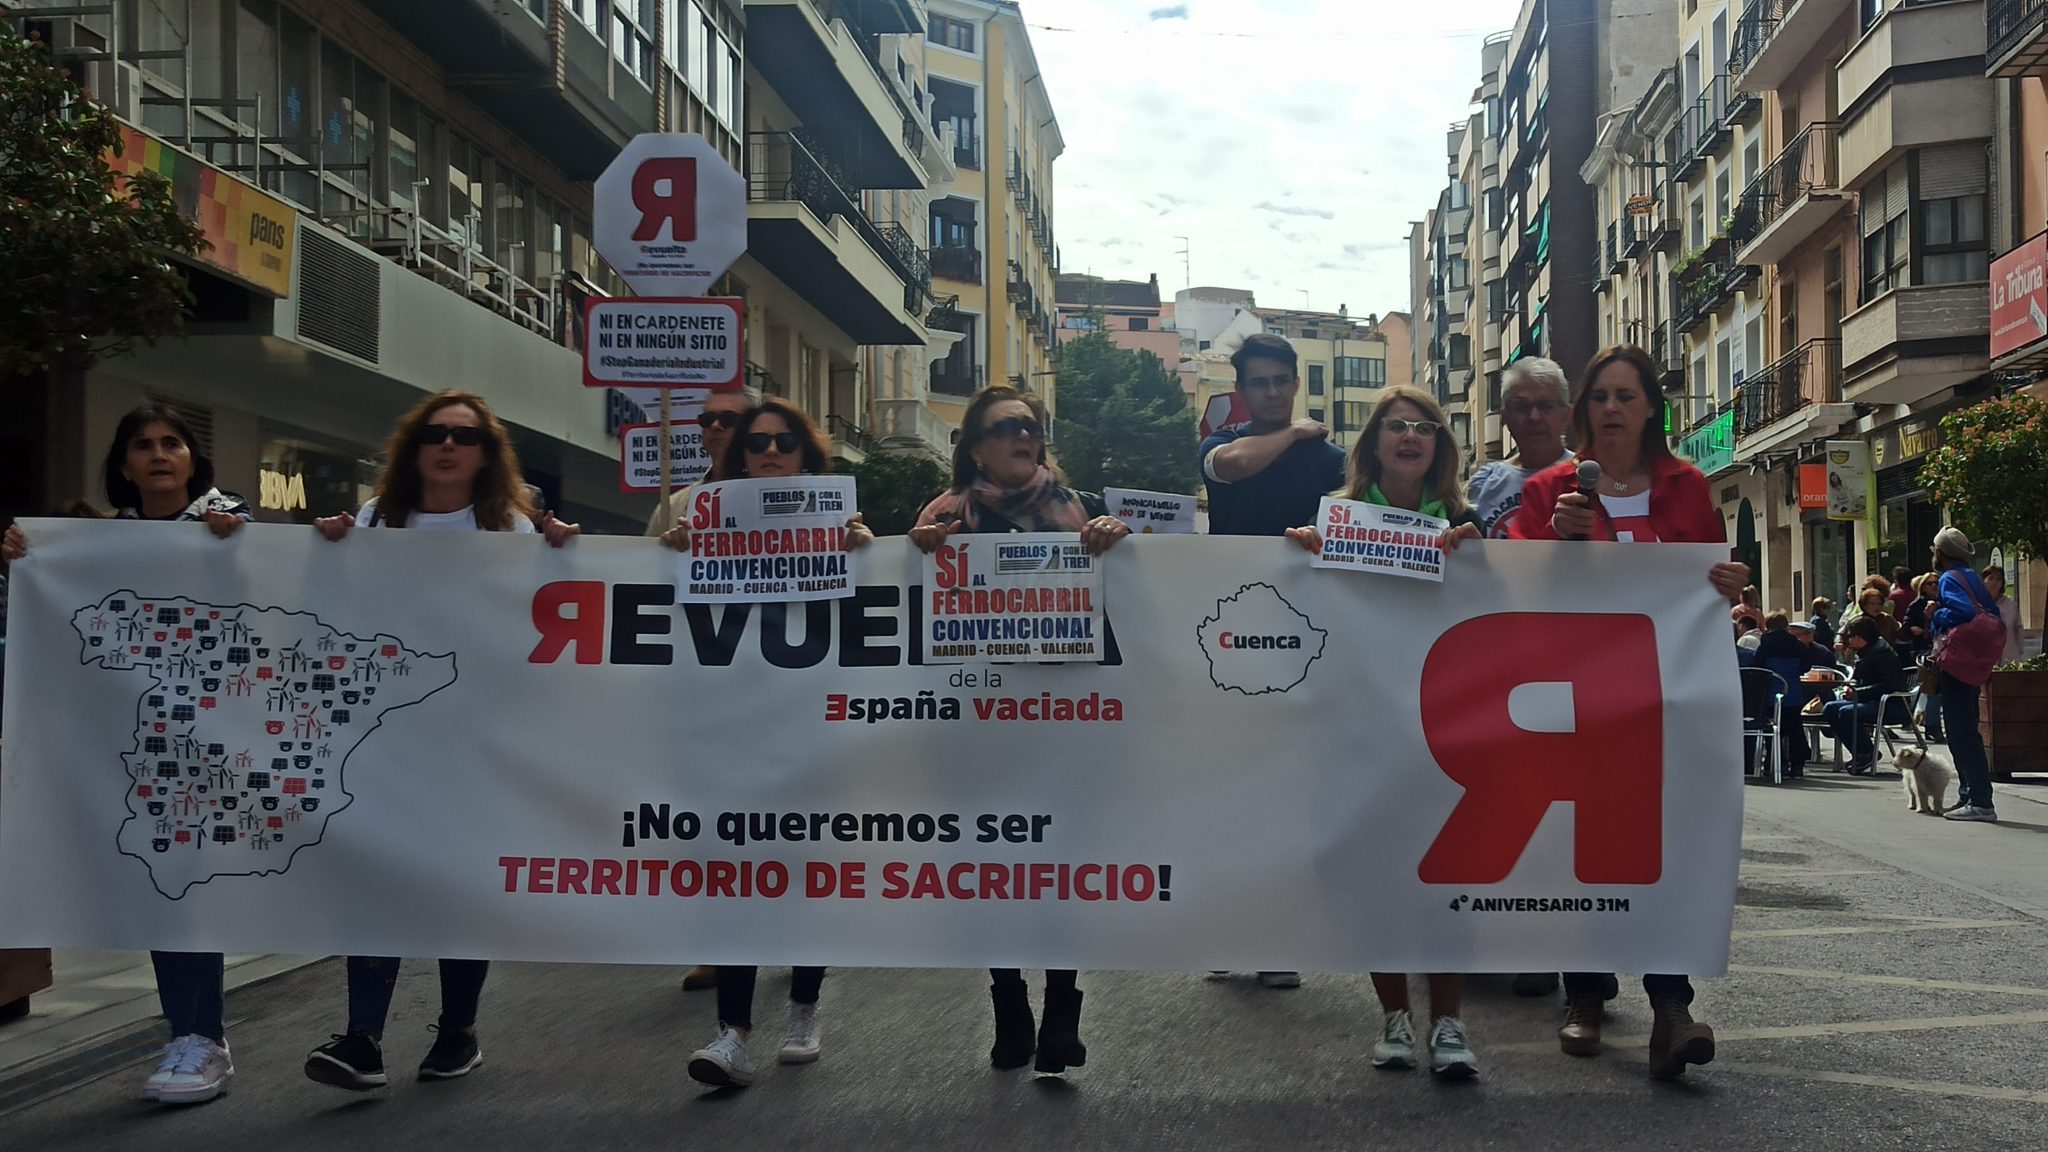 Grupo de personas sujetando la pancarta de La Revuelta de la España vaciada, manifestándose en una calle